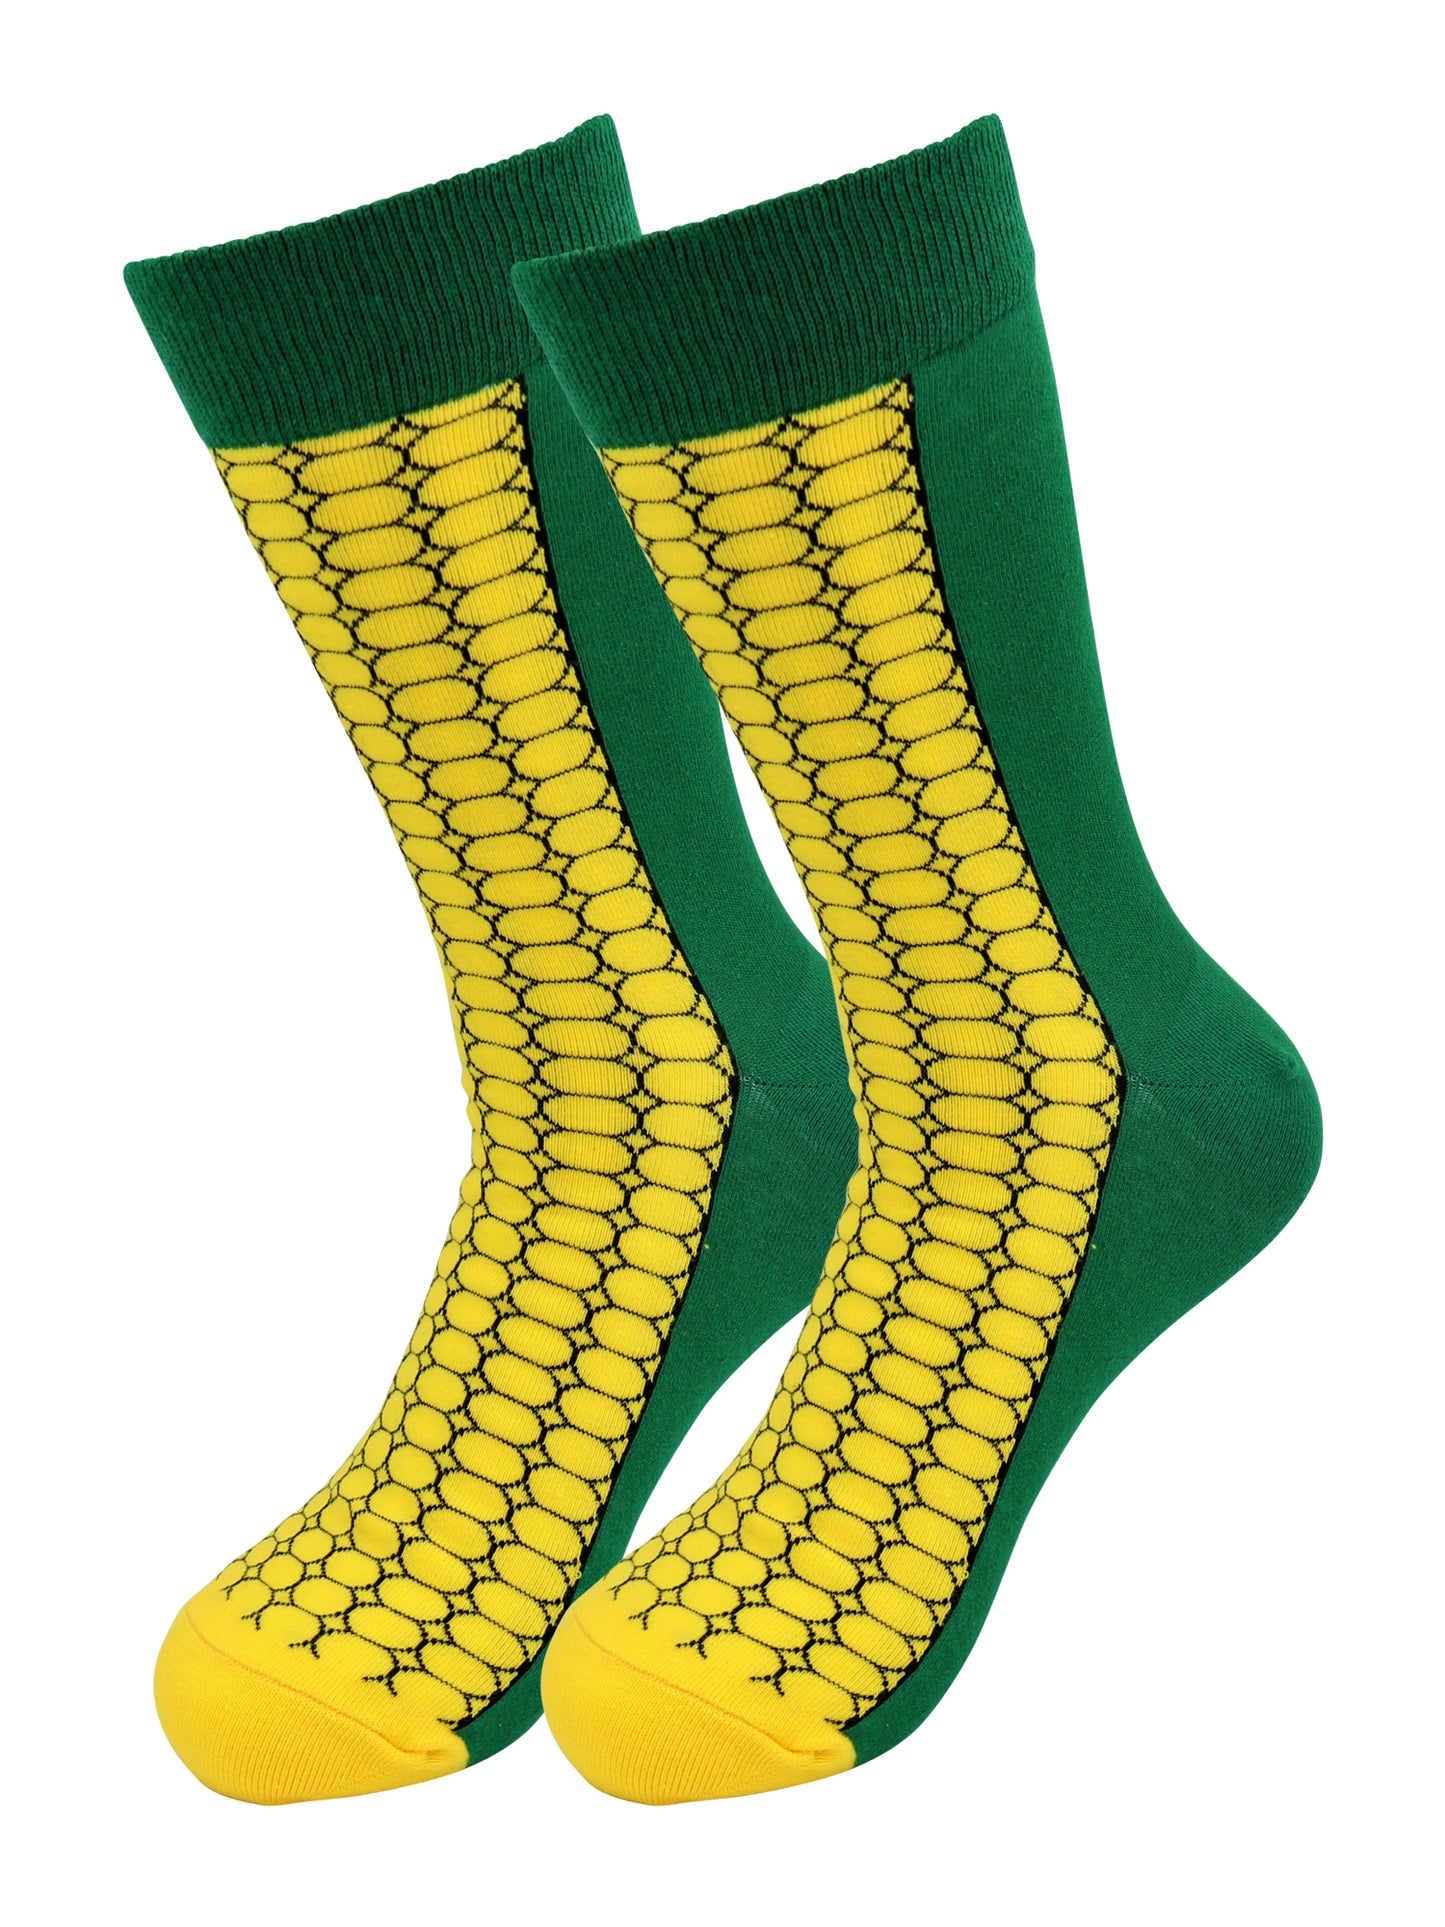 Sick Socks – Corn – Down South Food Casual Dress Socks